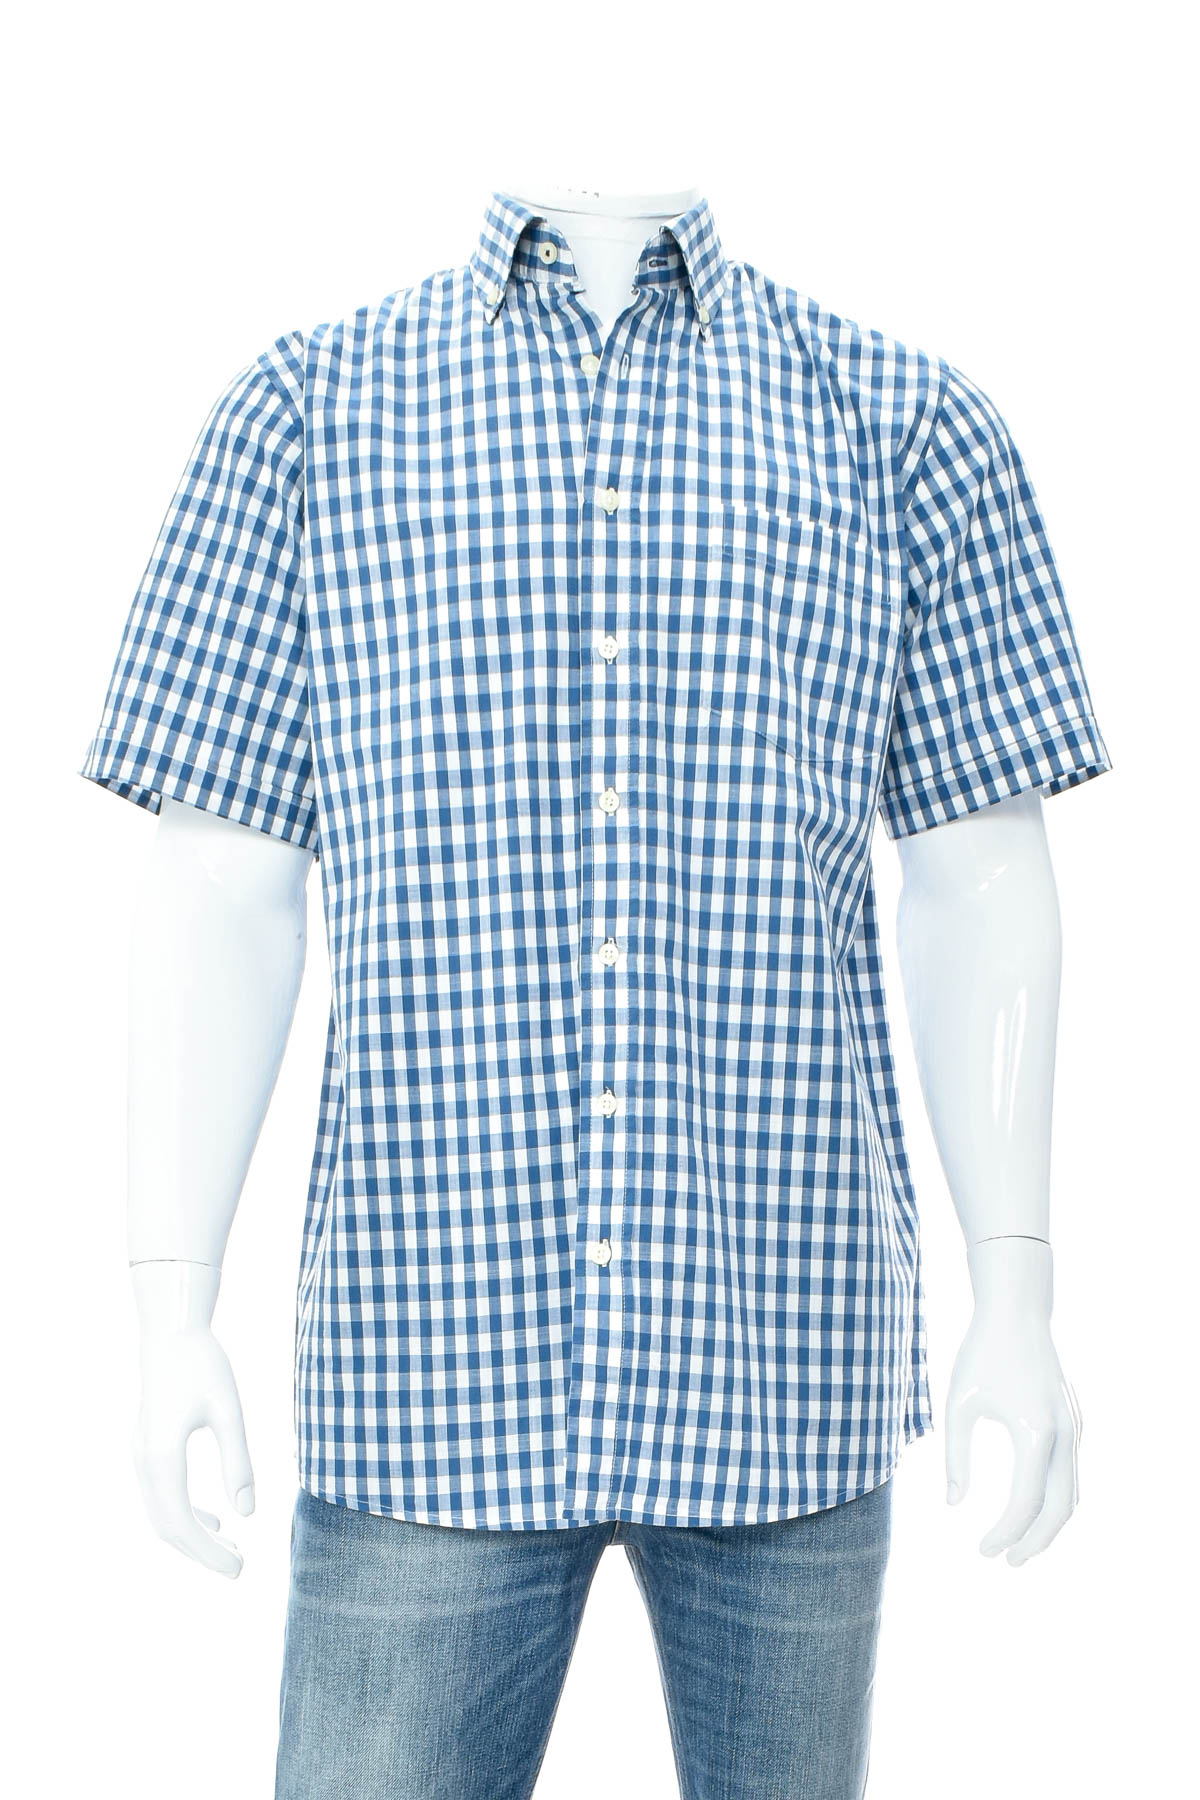 Men's shirt - A.W. Dunmore - 0